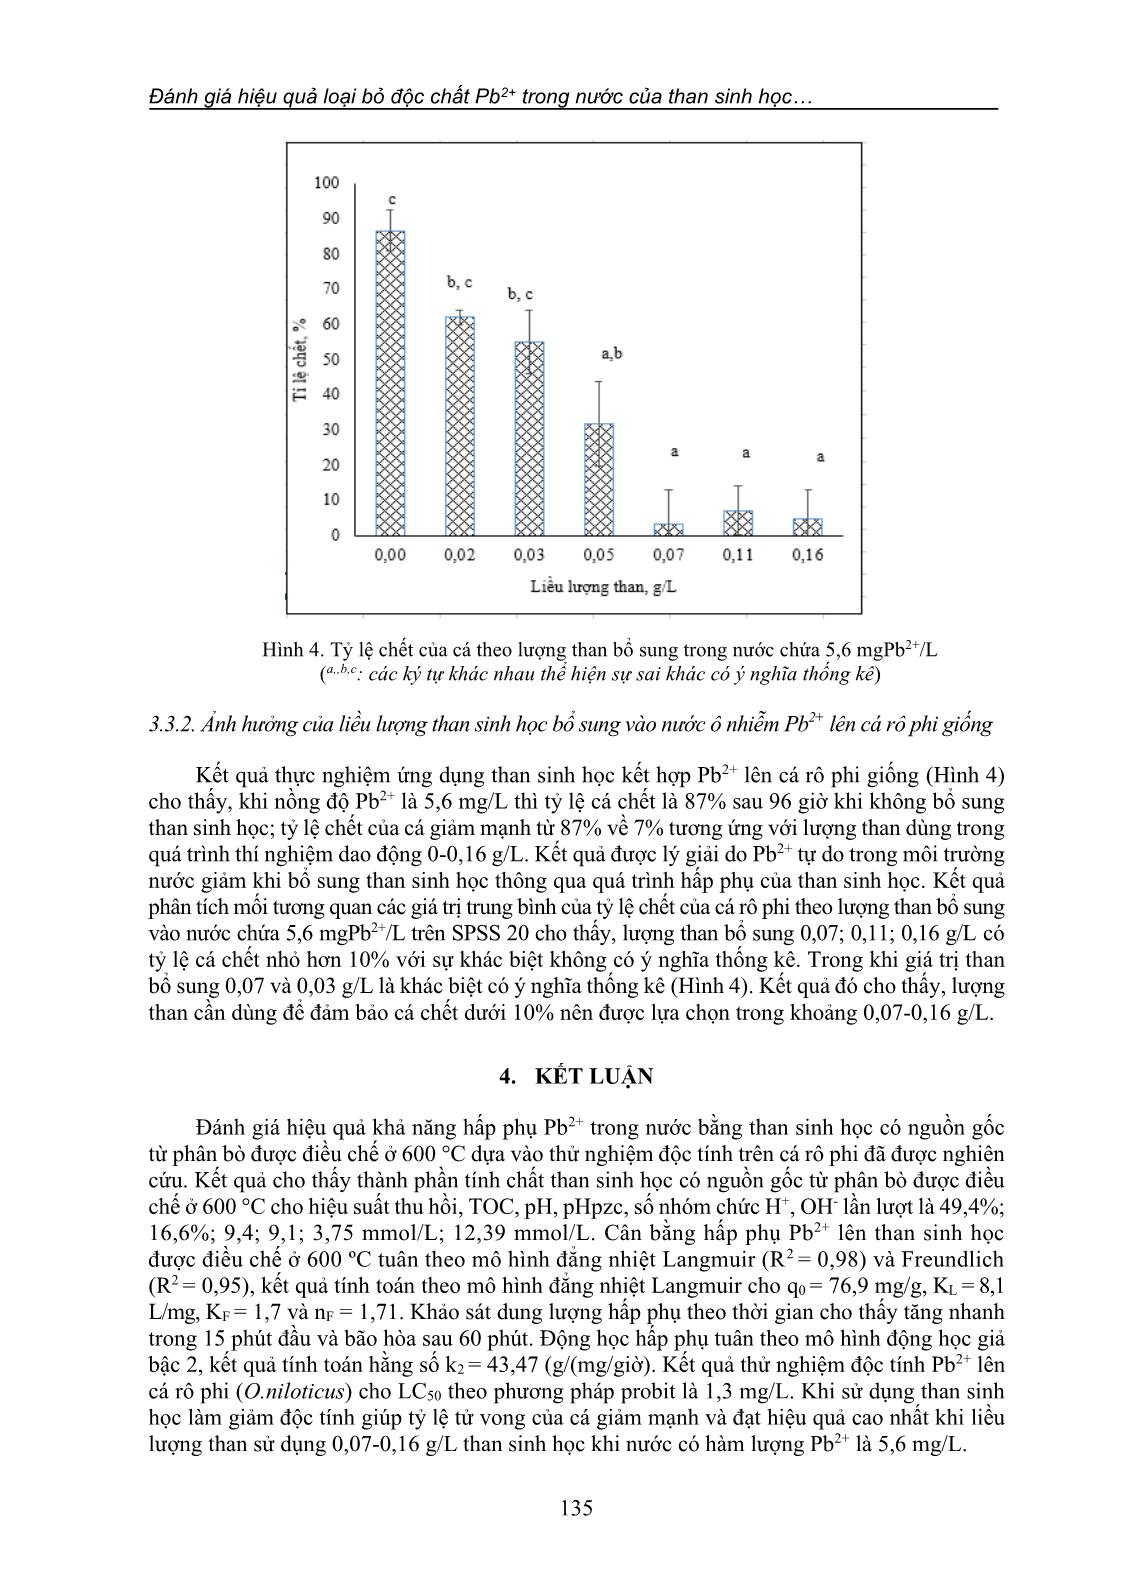 Đánh giá hiệu quả loại bỏ độc chất Pb2+ trong nước của than sinh học có nguồn gốc từ phân bò: Thử nghiệm độc tính trên cá rô phi giống (o. niloticus) trang 9